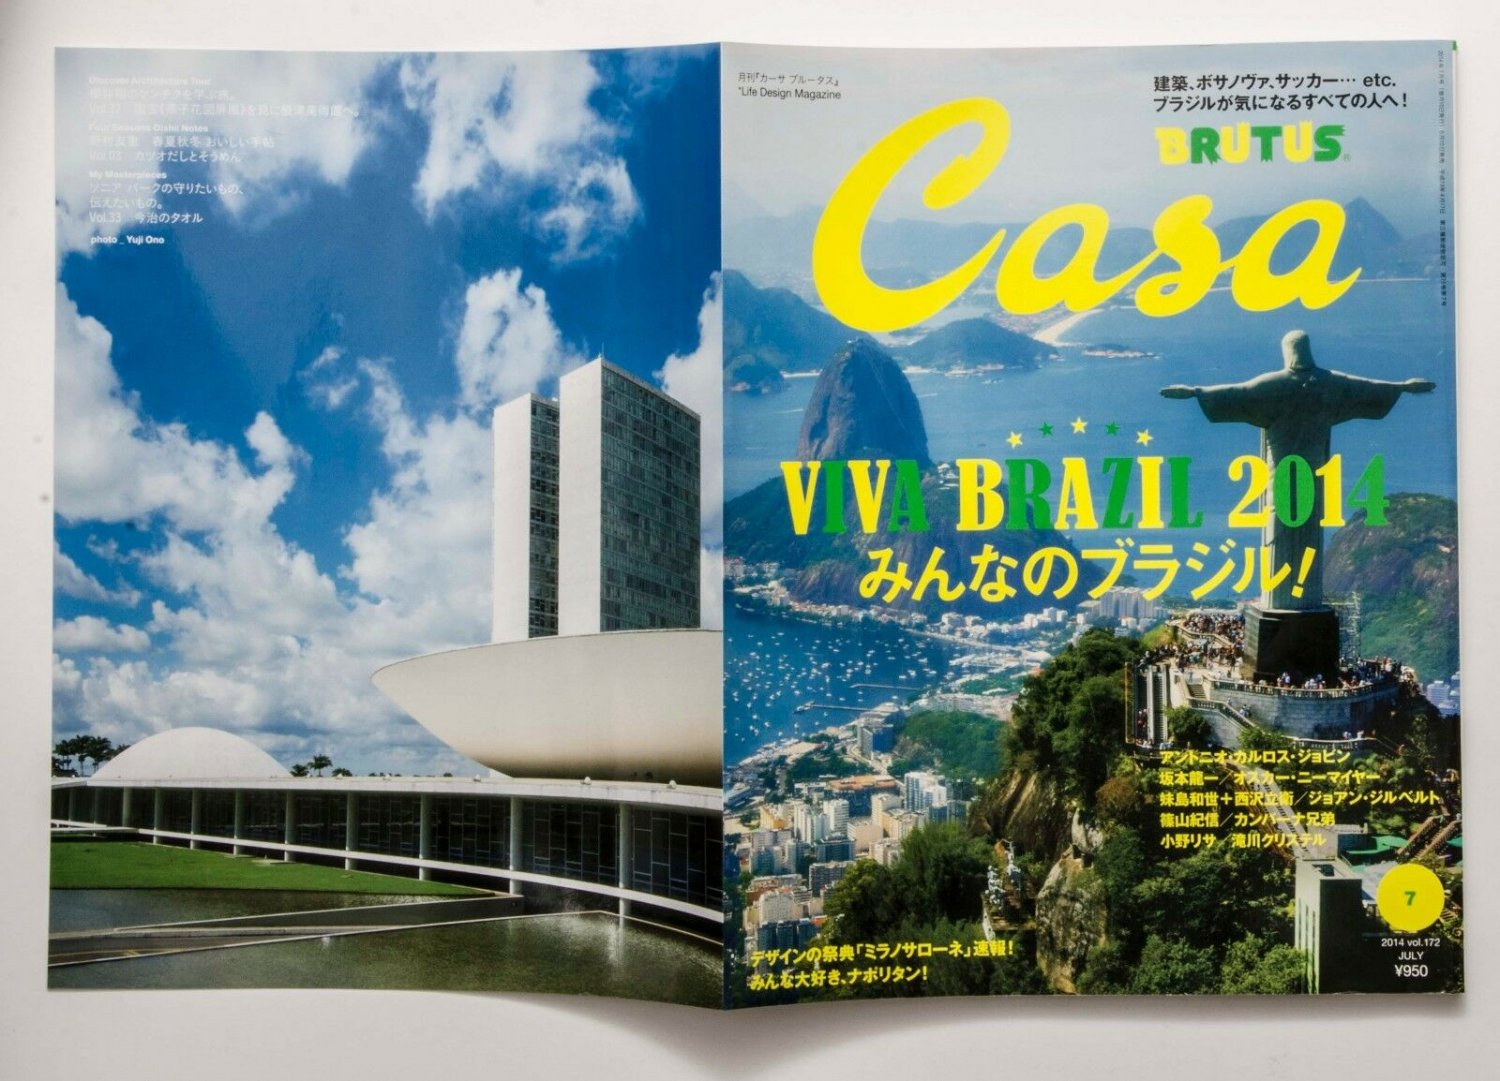 Casa Brutus Japanese Magazine 14 Featuring Viva Brazil Antonio Carlos Jobim